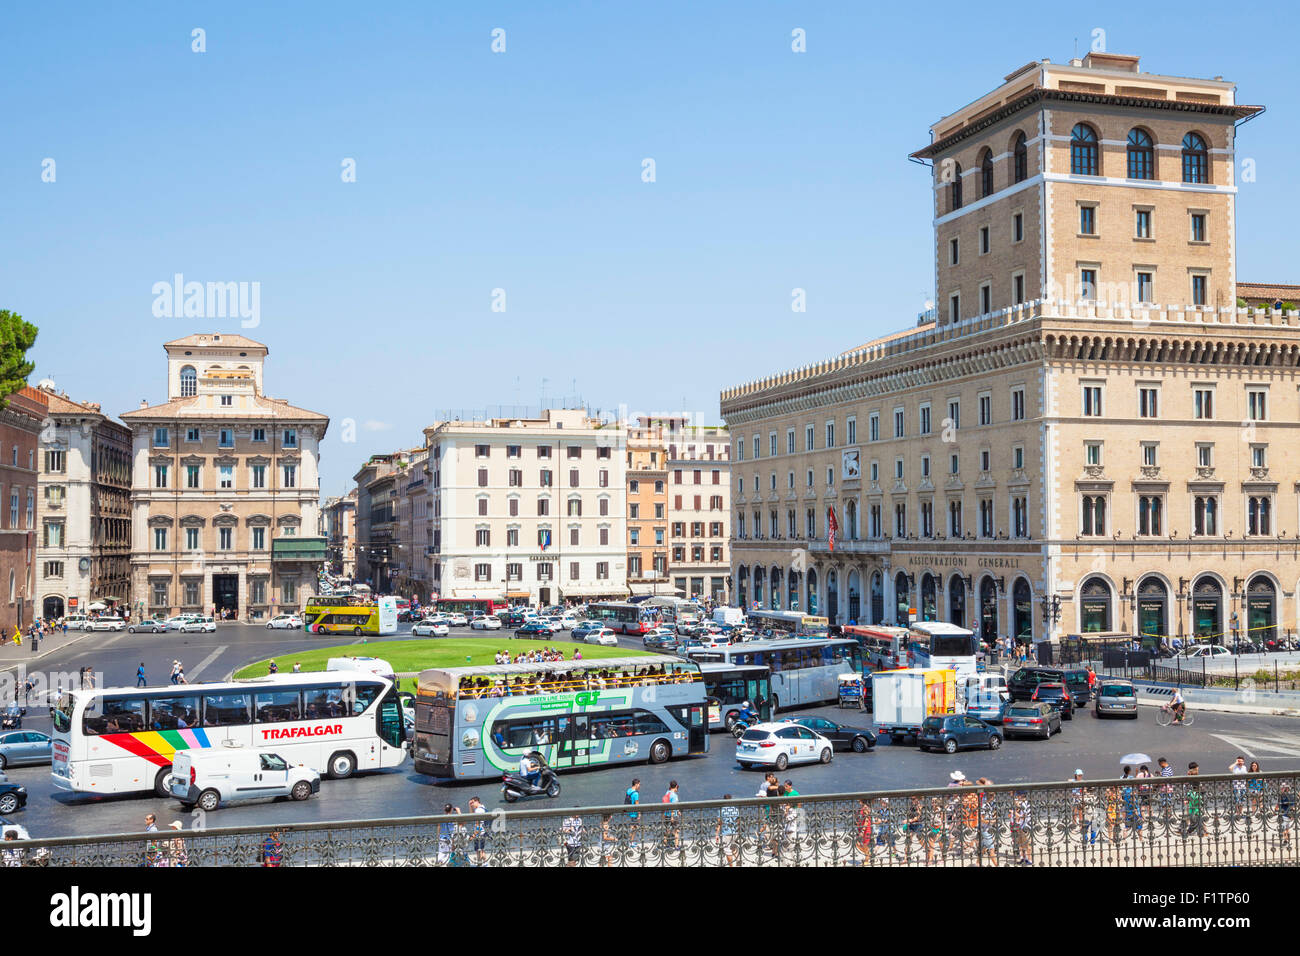 Le trafic important autour du rond-point de la Piazza Venezia Rome Roma Lazio Italie Europe de l'UE Banque D'Images